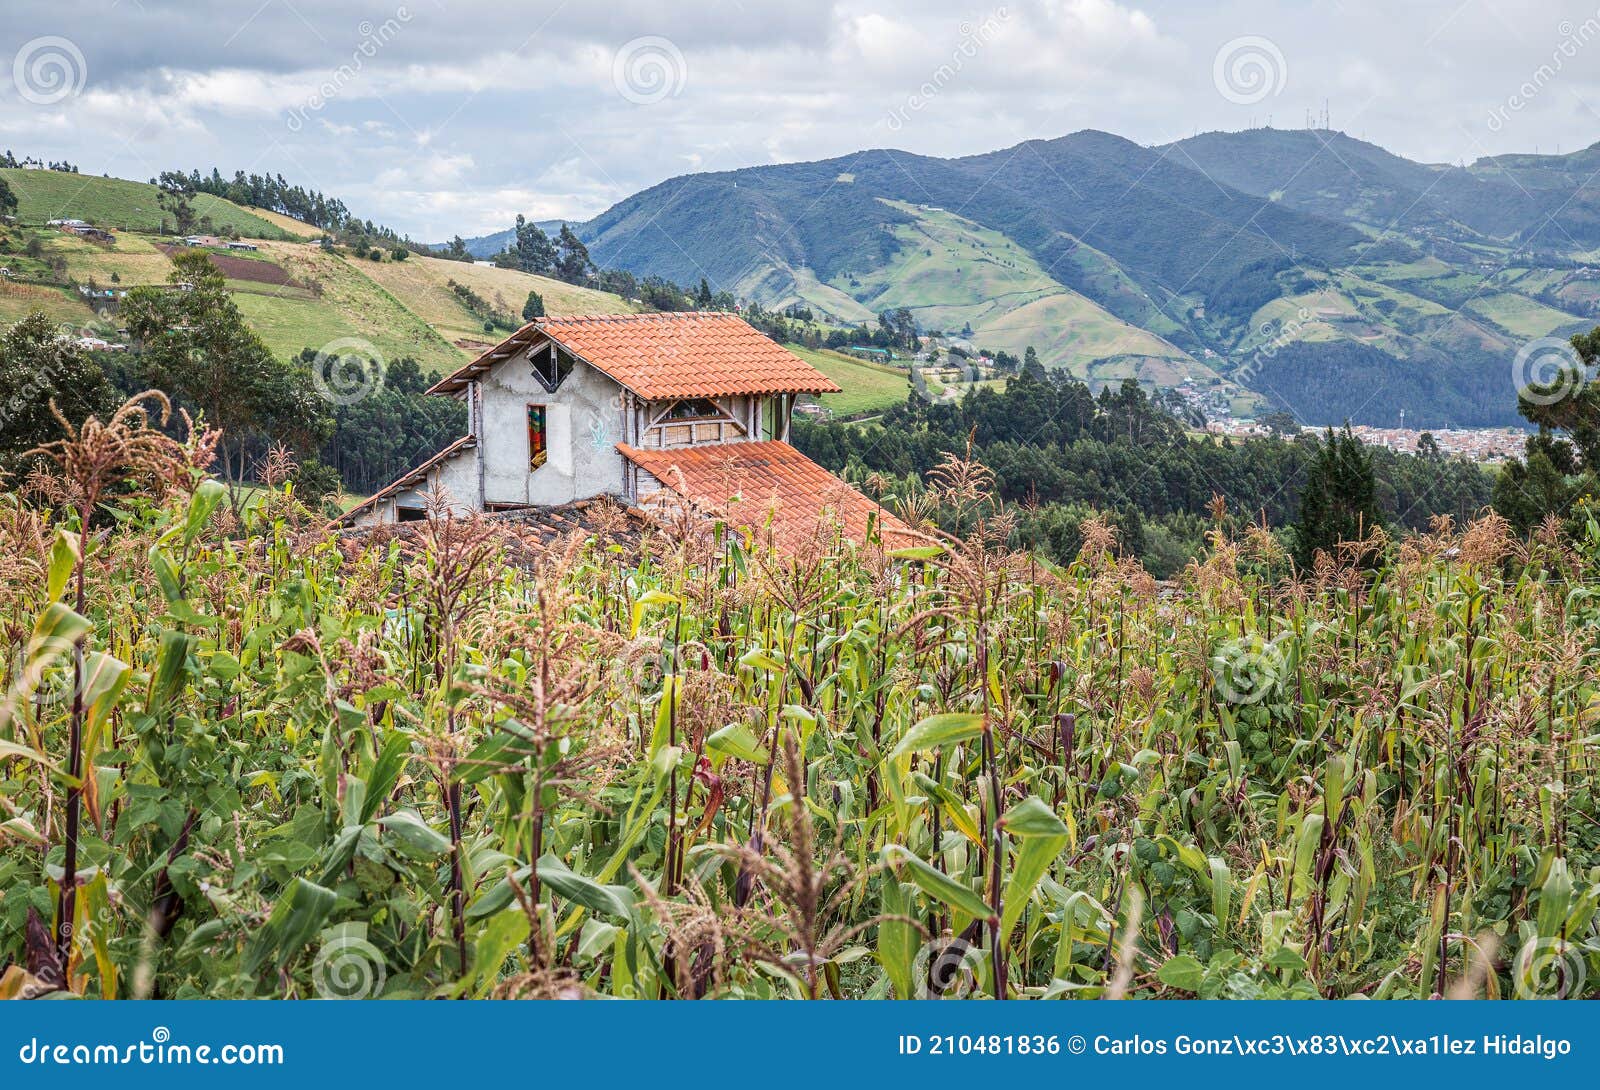 una casita rodeada por cultivos de maiz